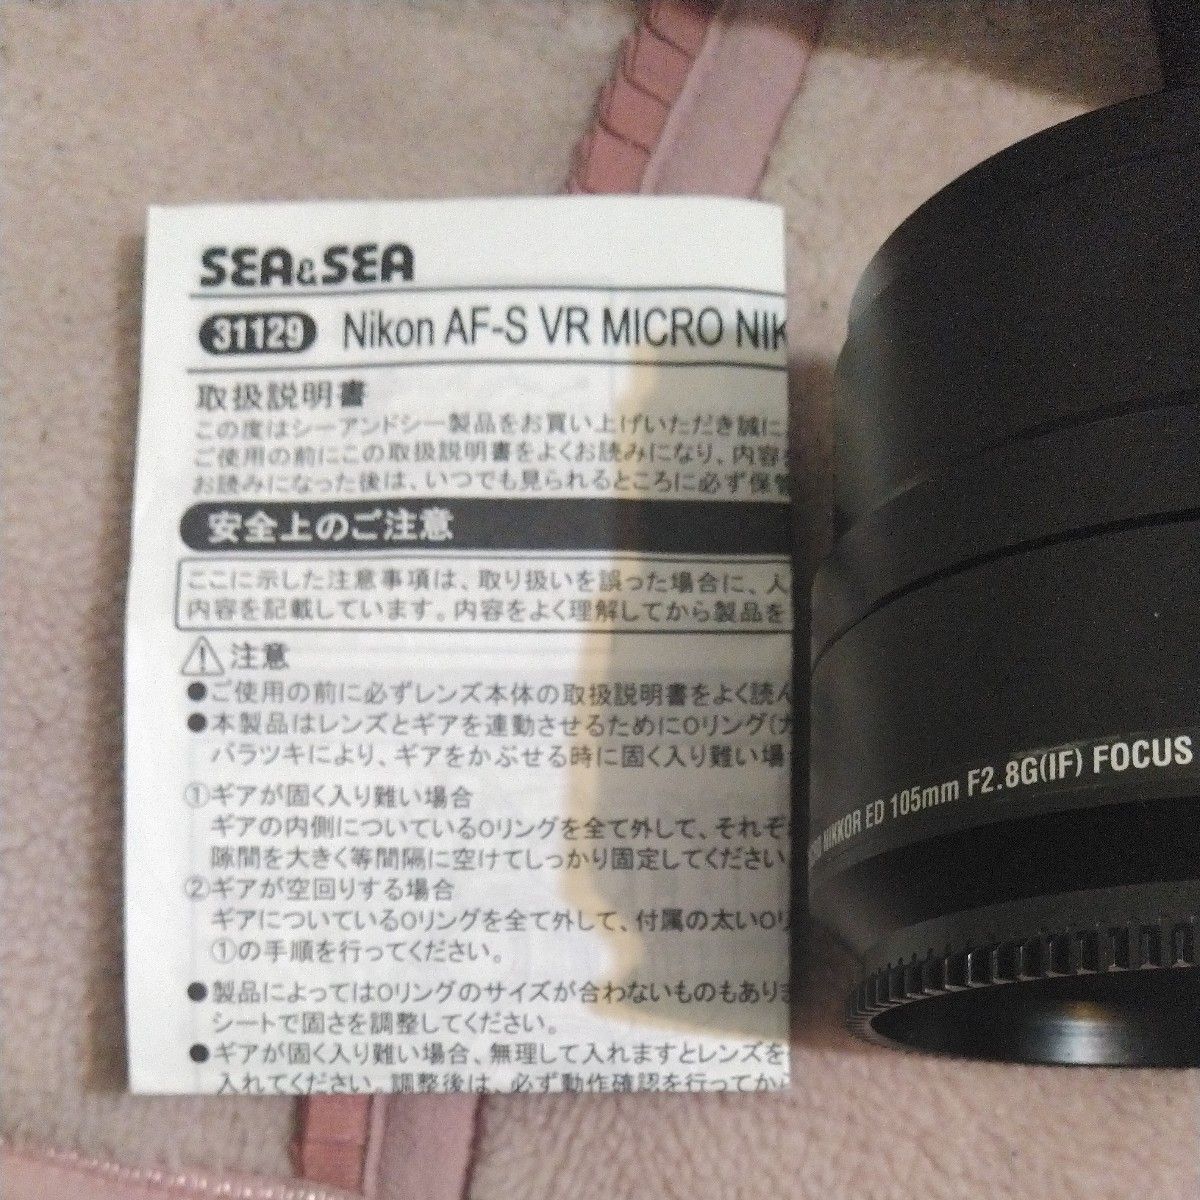 SEA&SEA 31129 AF-S VR MICRO ED 105mm F2.8G（IF）FOCUS GEAR Nikon